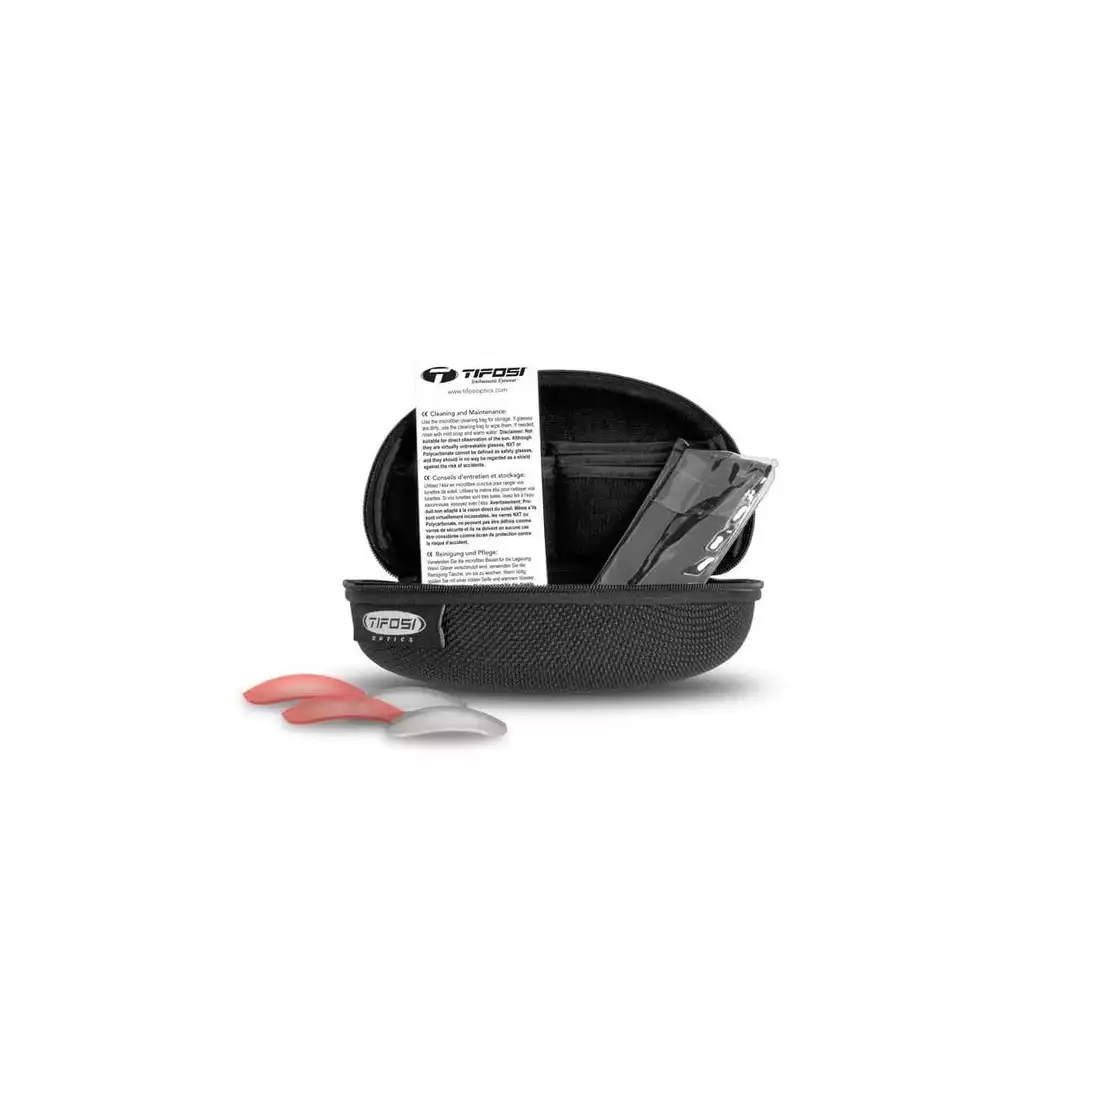 Okulary sportowe z wymiennymi soczewkami TIFOSI DAVOS matte black TFI-1460100101